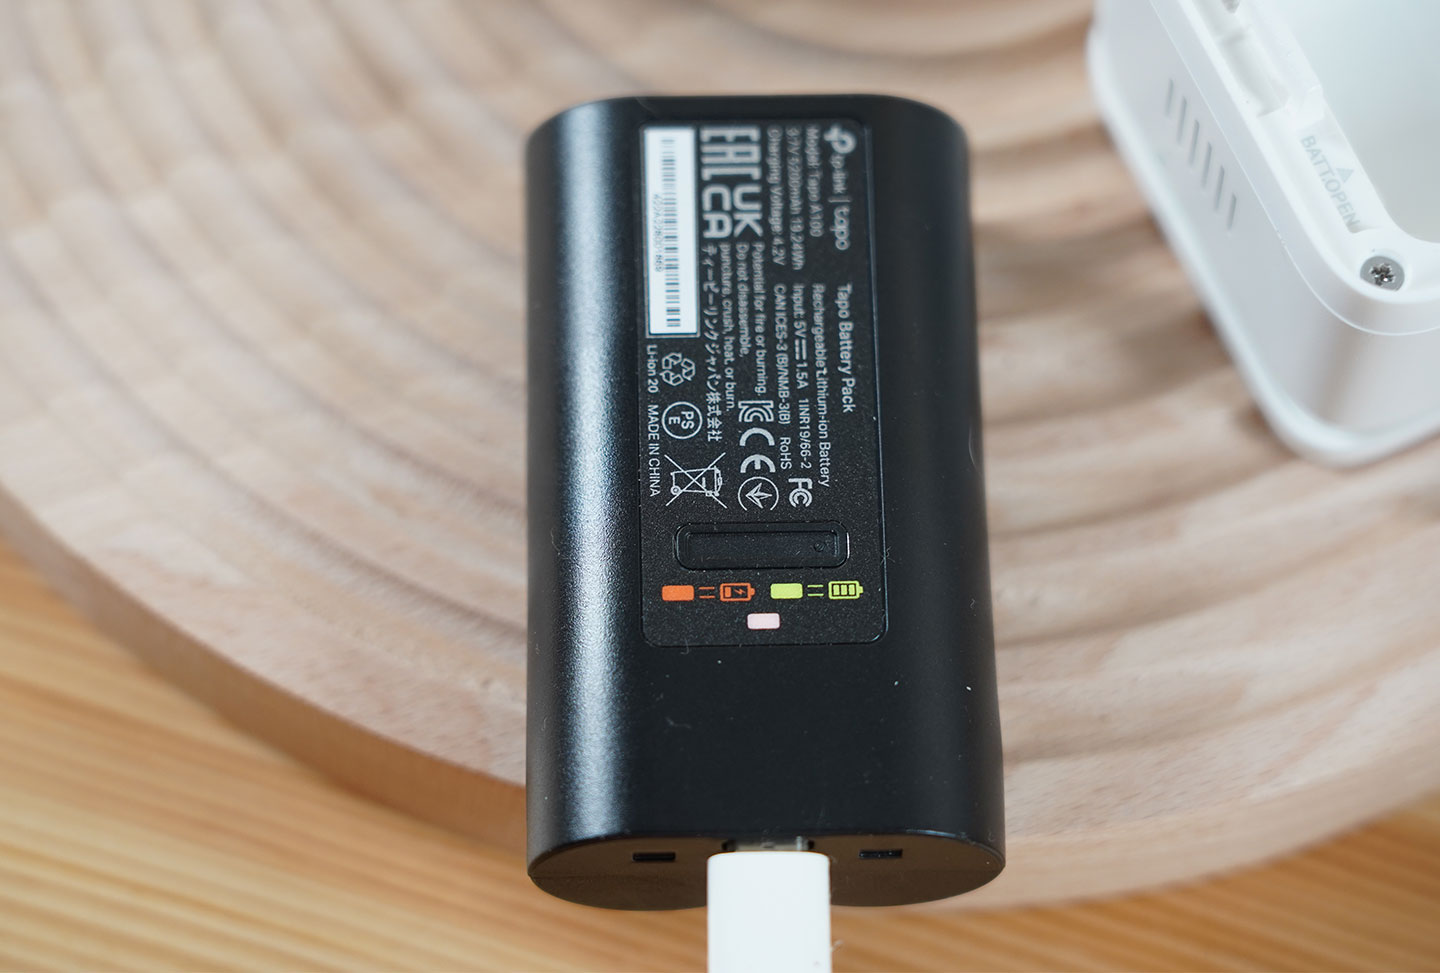 連結充電，可透過電池上的指示燈了解電量狀態。